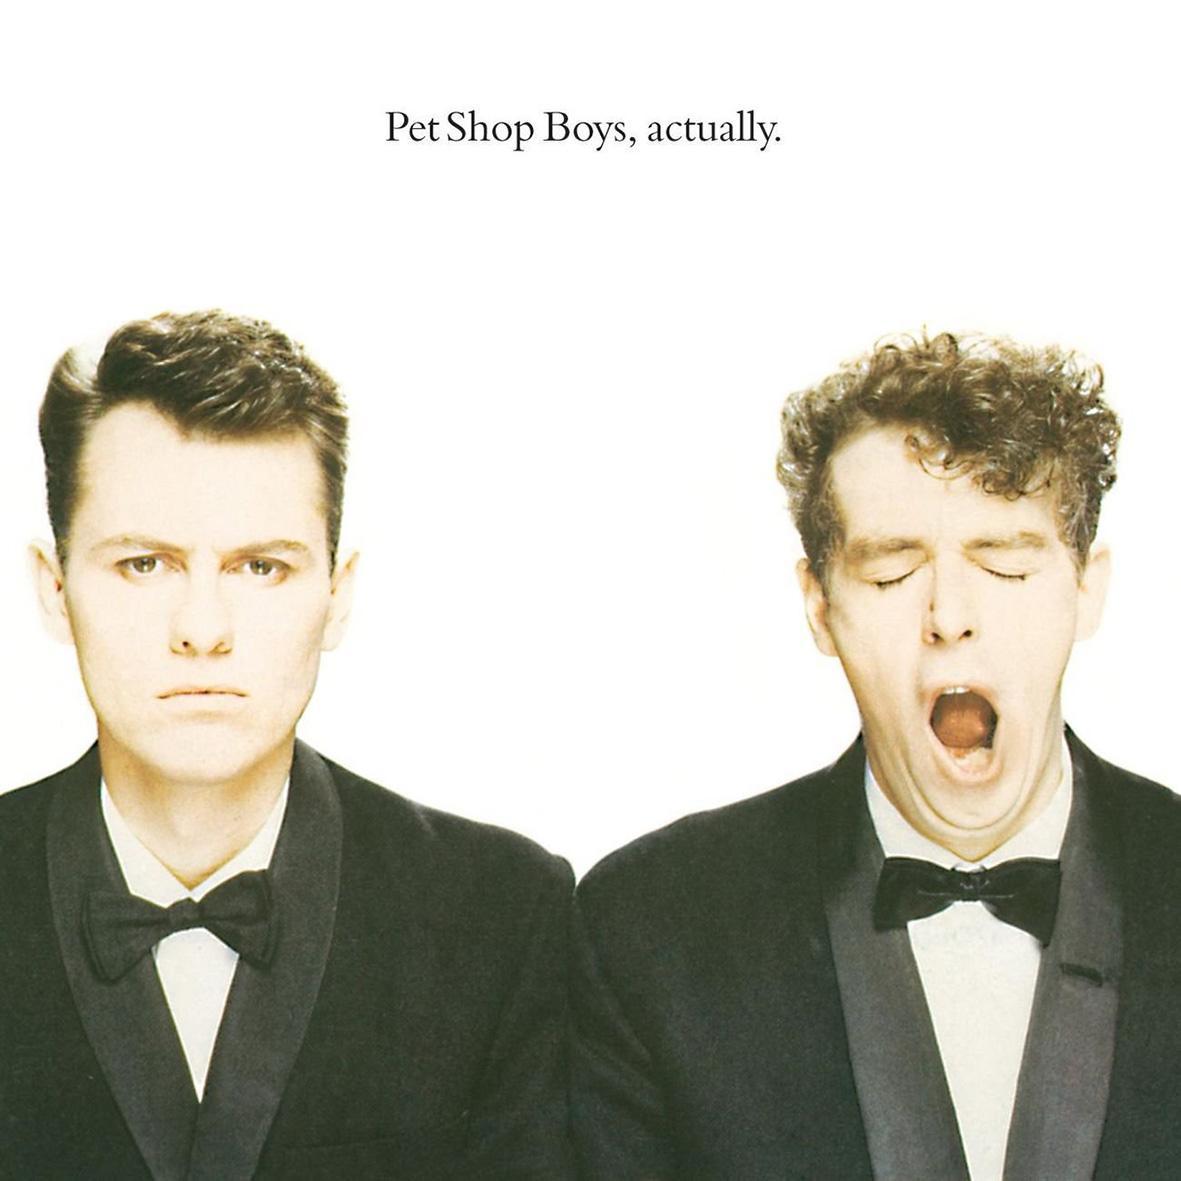 Lyssna också på: ”Actually” och ”Introspective” med Pet Shop Boys. Två av de sjutton bästa album som har gjorts.